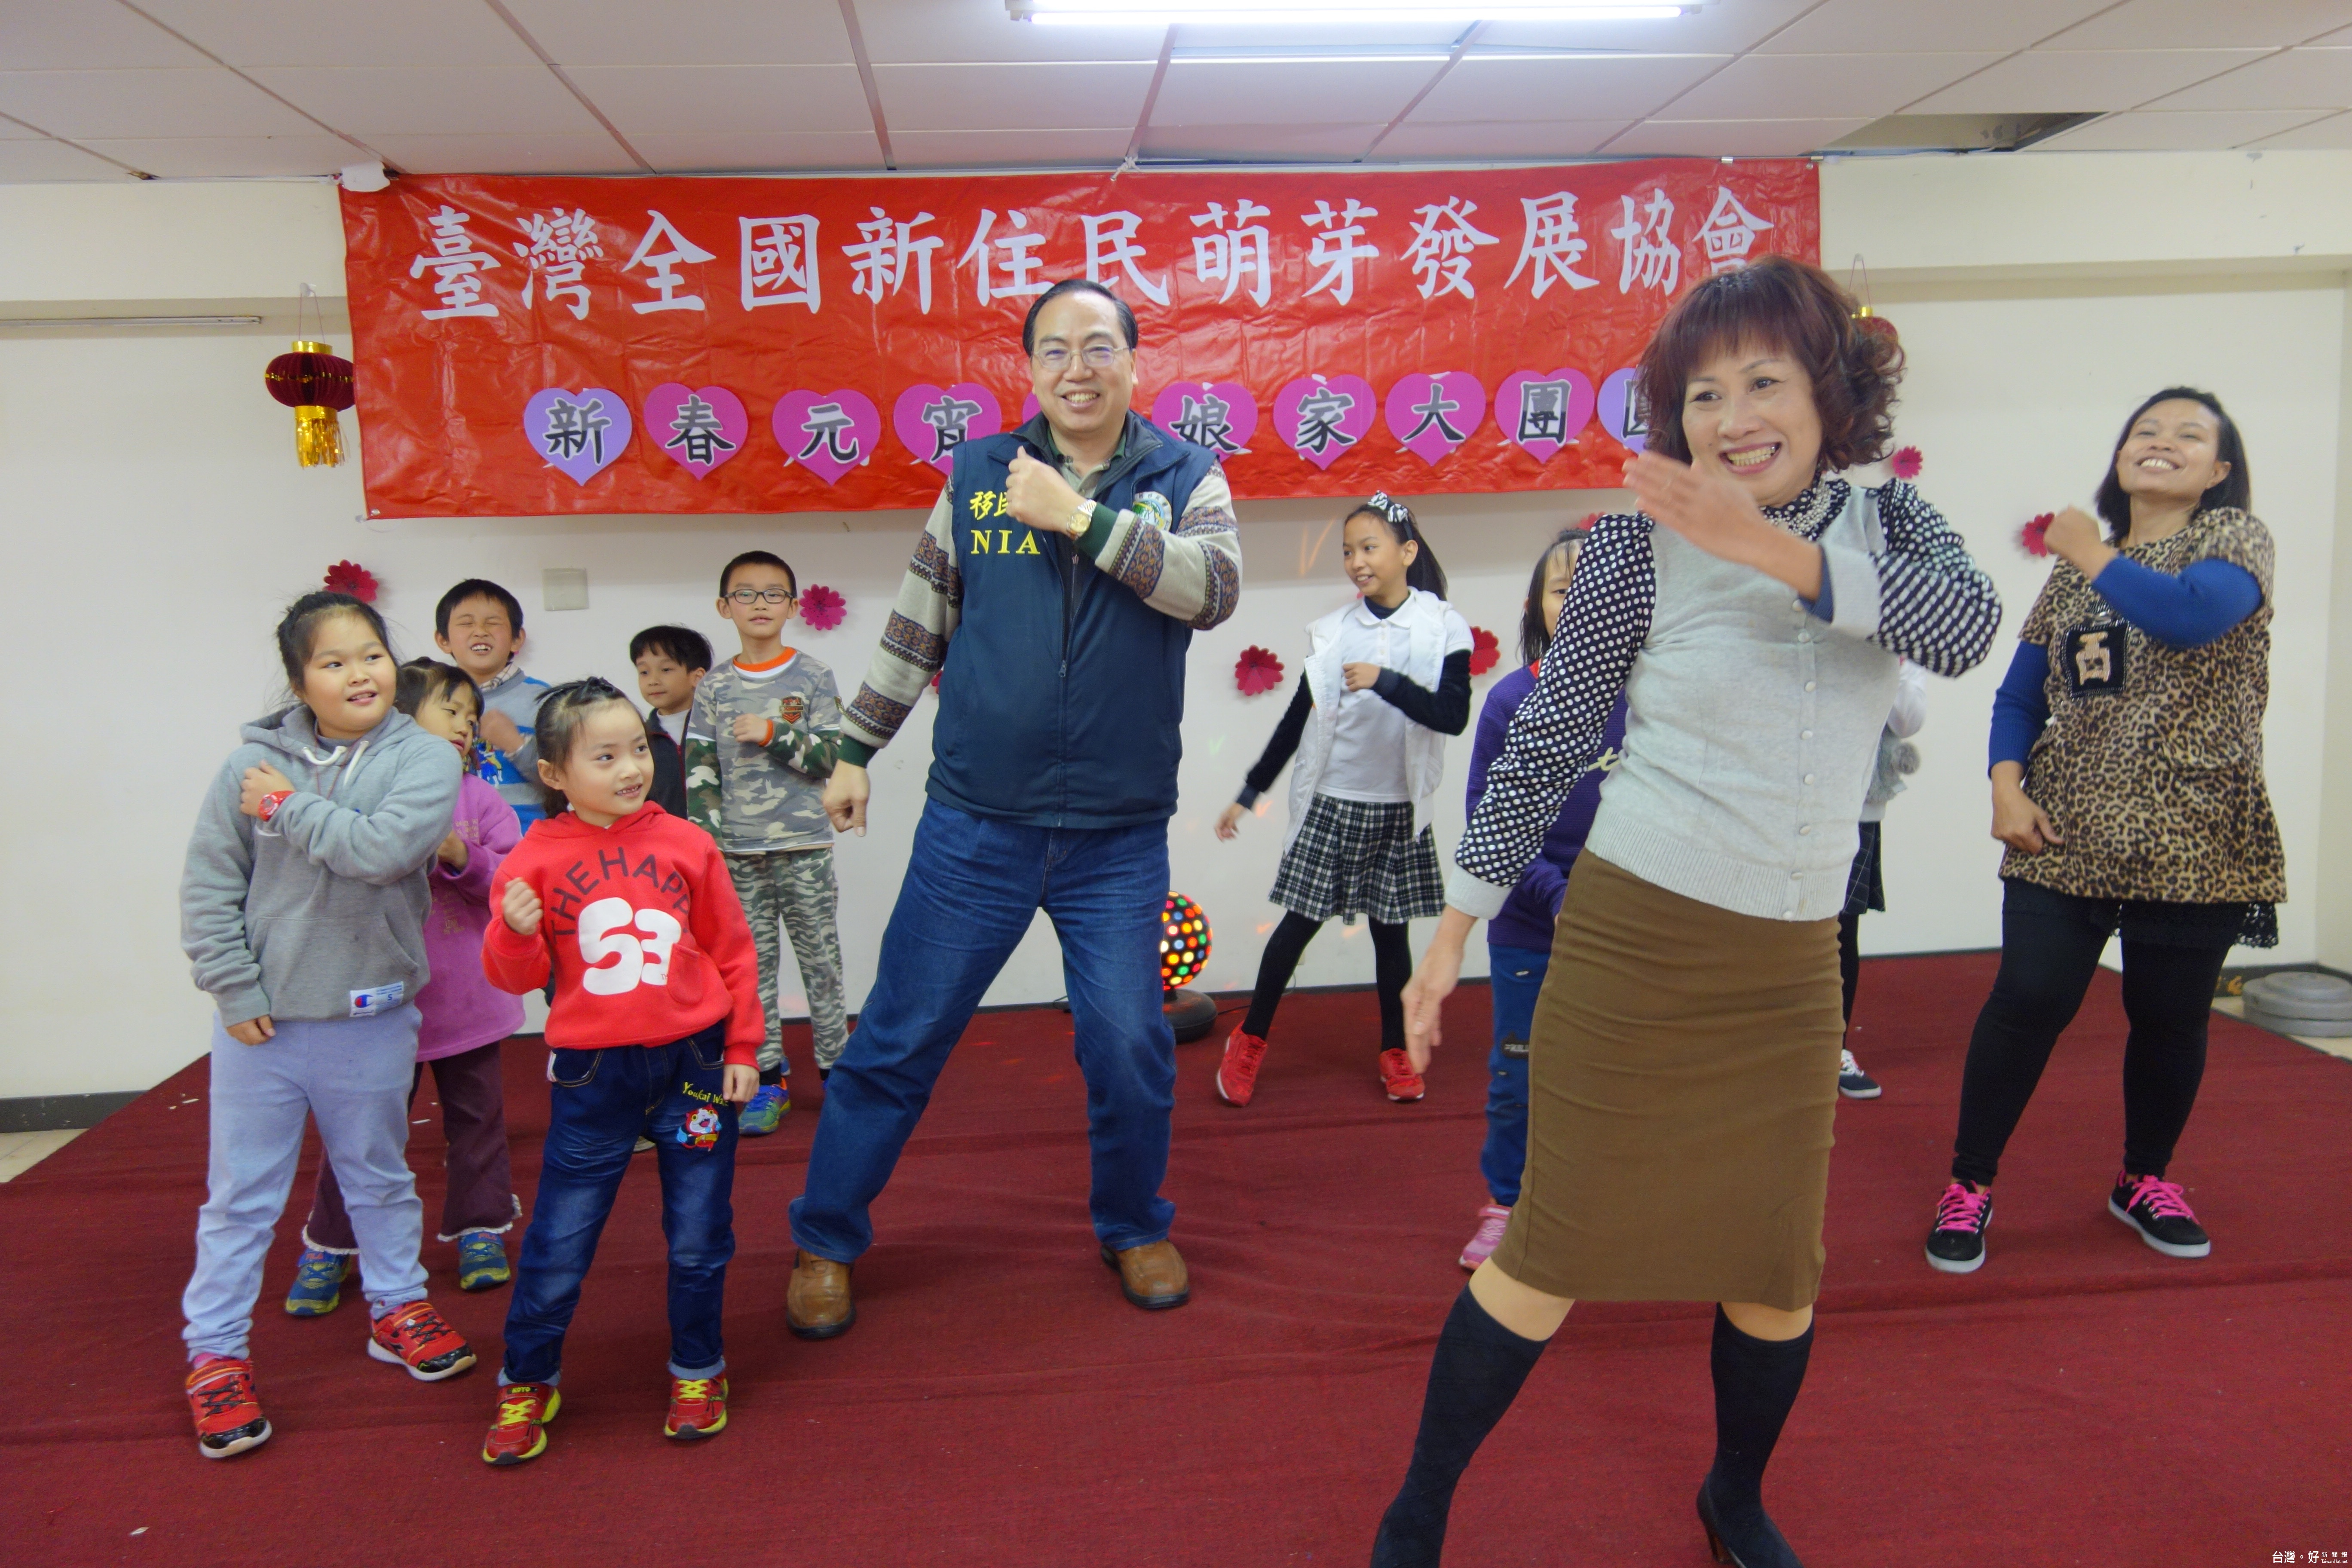 臺灣全國新住民萌芽發展協會，安排熱鬧歡慶的「新春元宵慶團圓」活動。